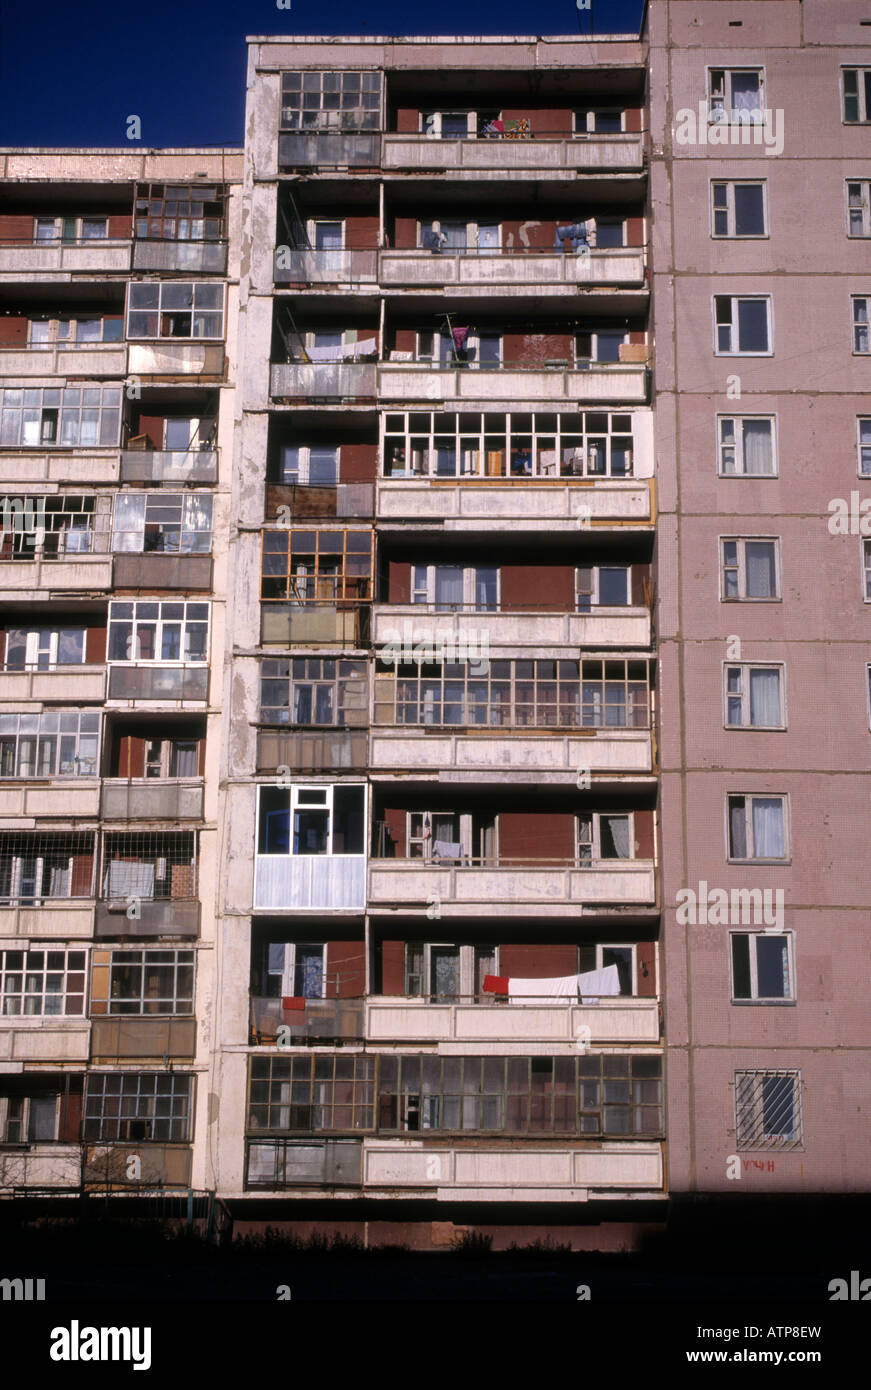 Les tours d'appartements soviétique Mongolie Oulan-bator Banque D'Images